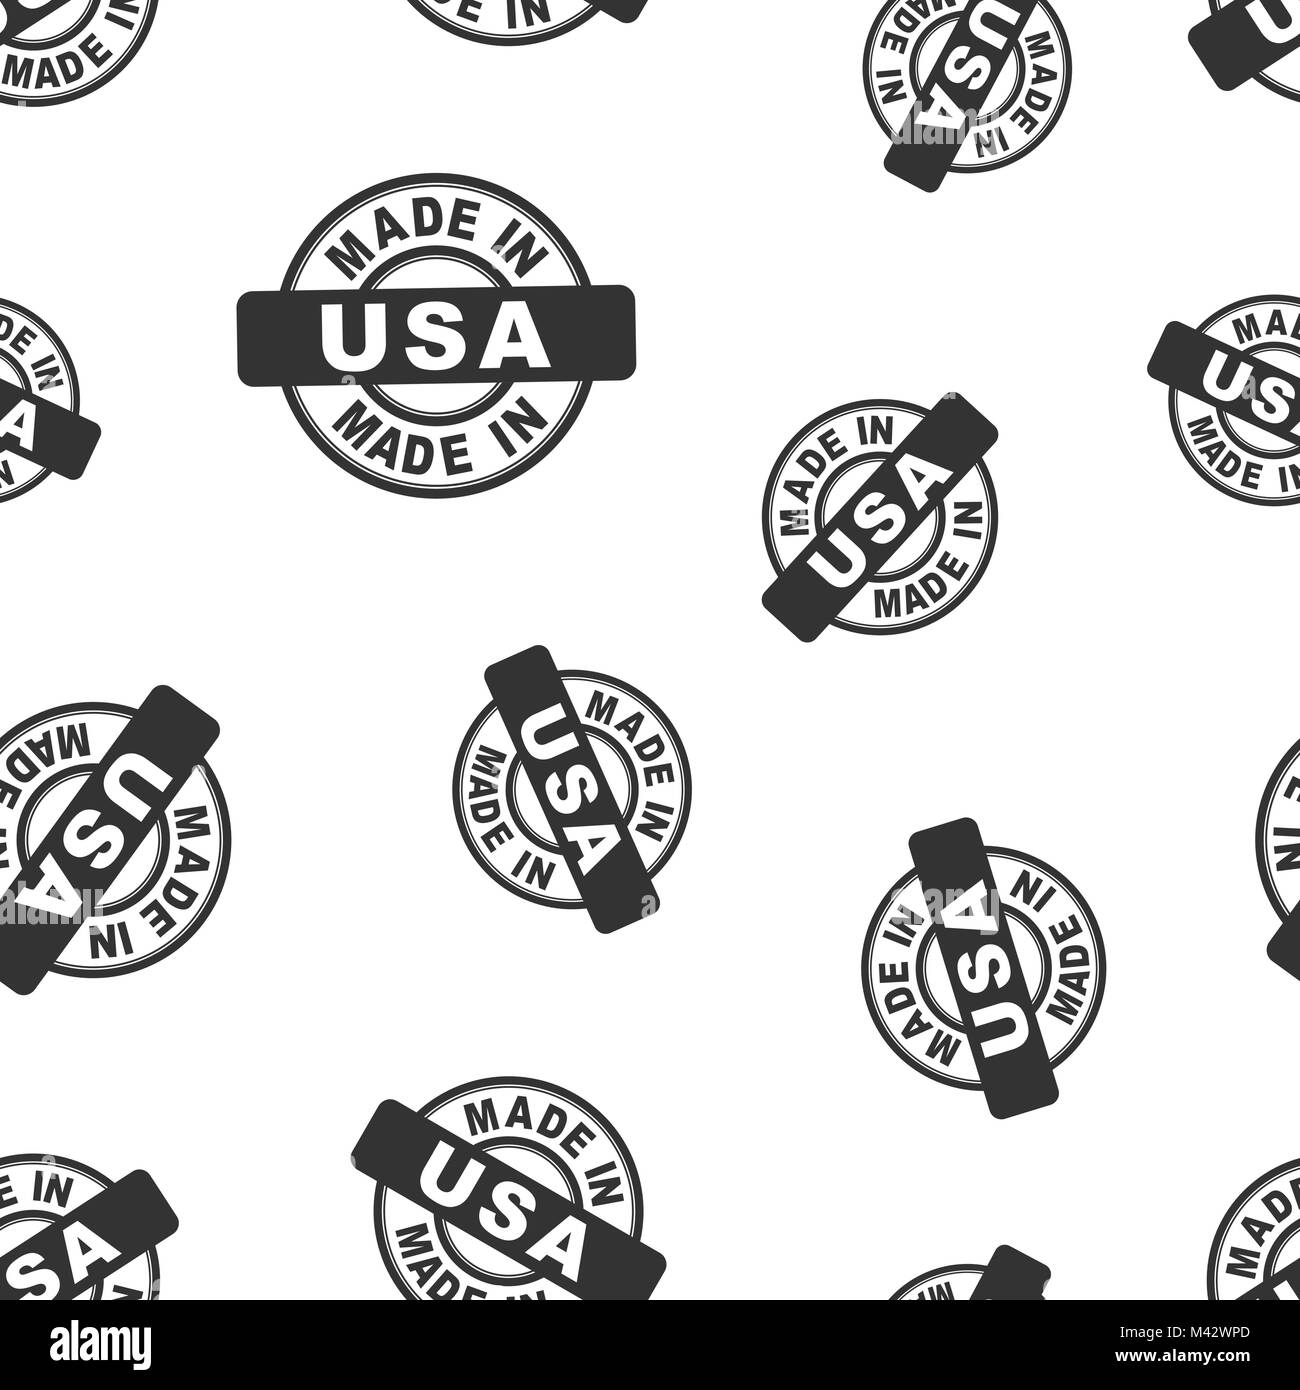 Made in USA stamp de fond transparent. Business flat vector illustration. Fabriqué au USA modèle symbole. Illustration de Vecteur